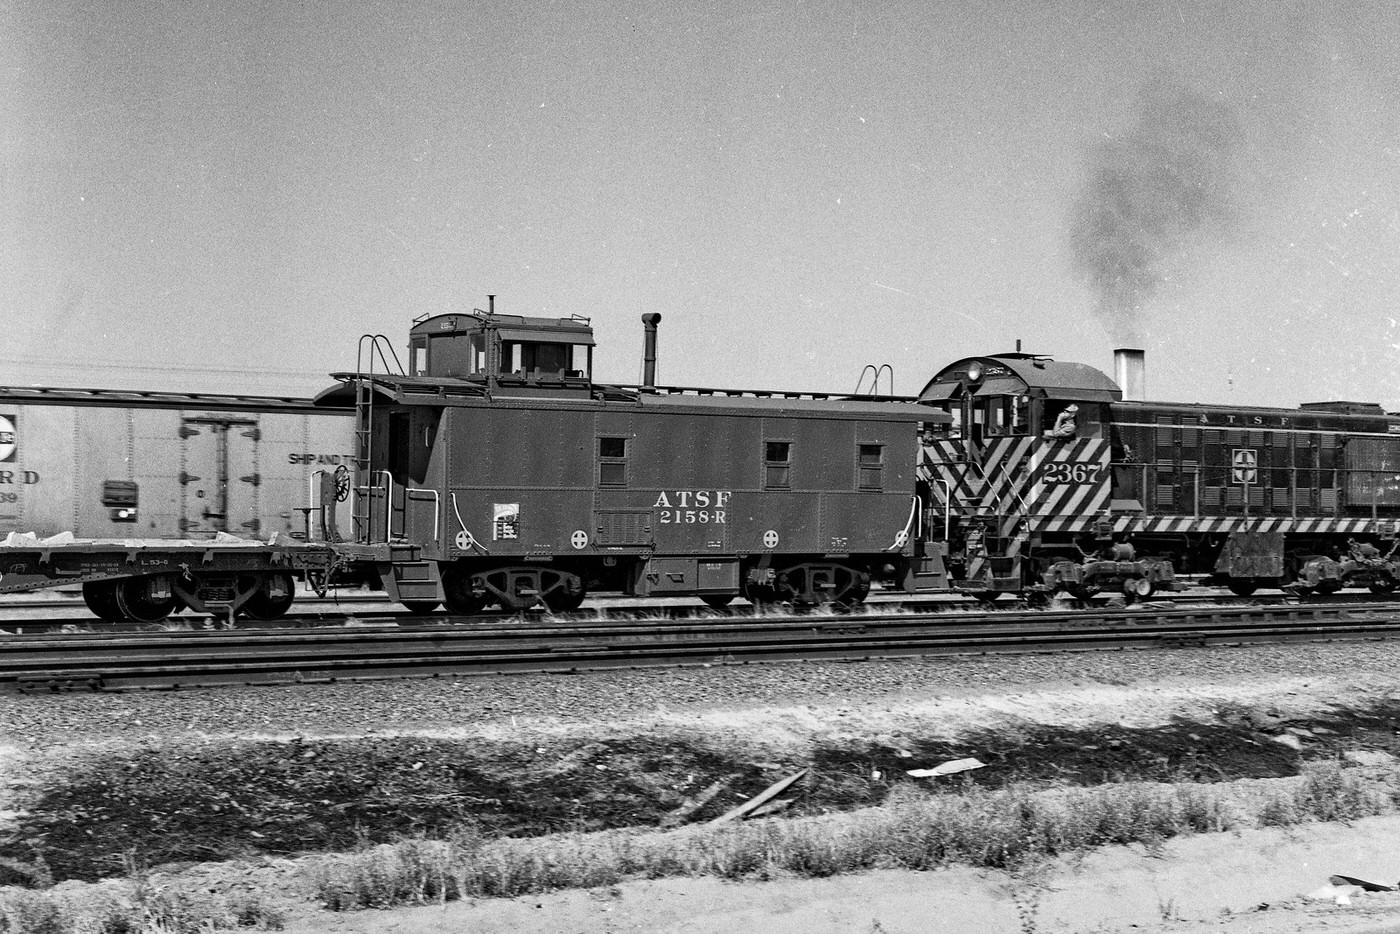 Along the main Santa Fe tracks in south Fresno in California's San Joaquin Valley back in 1962.